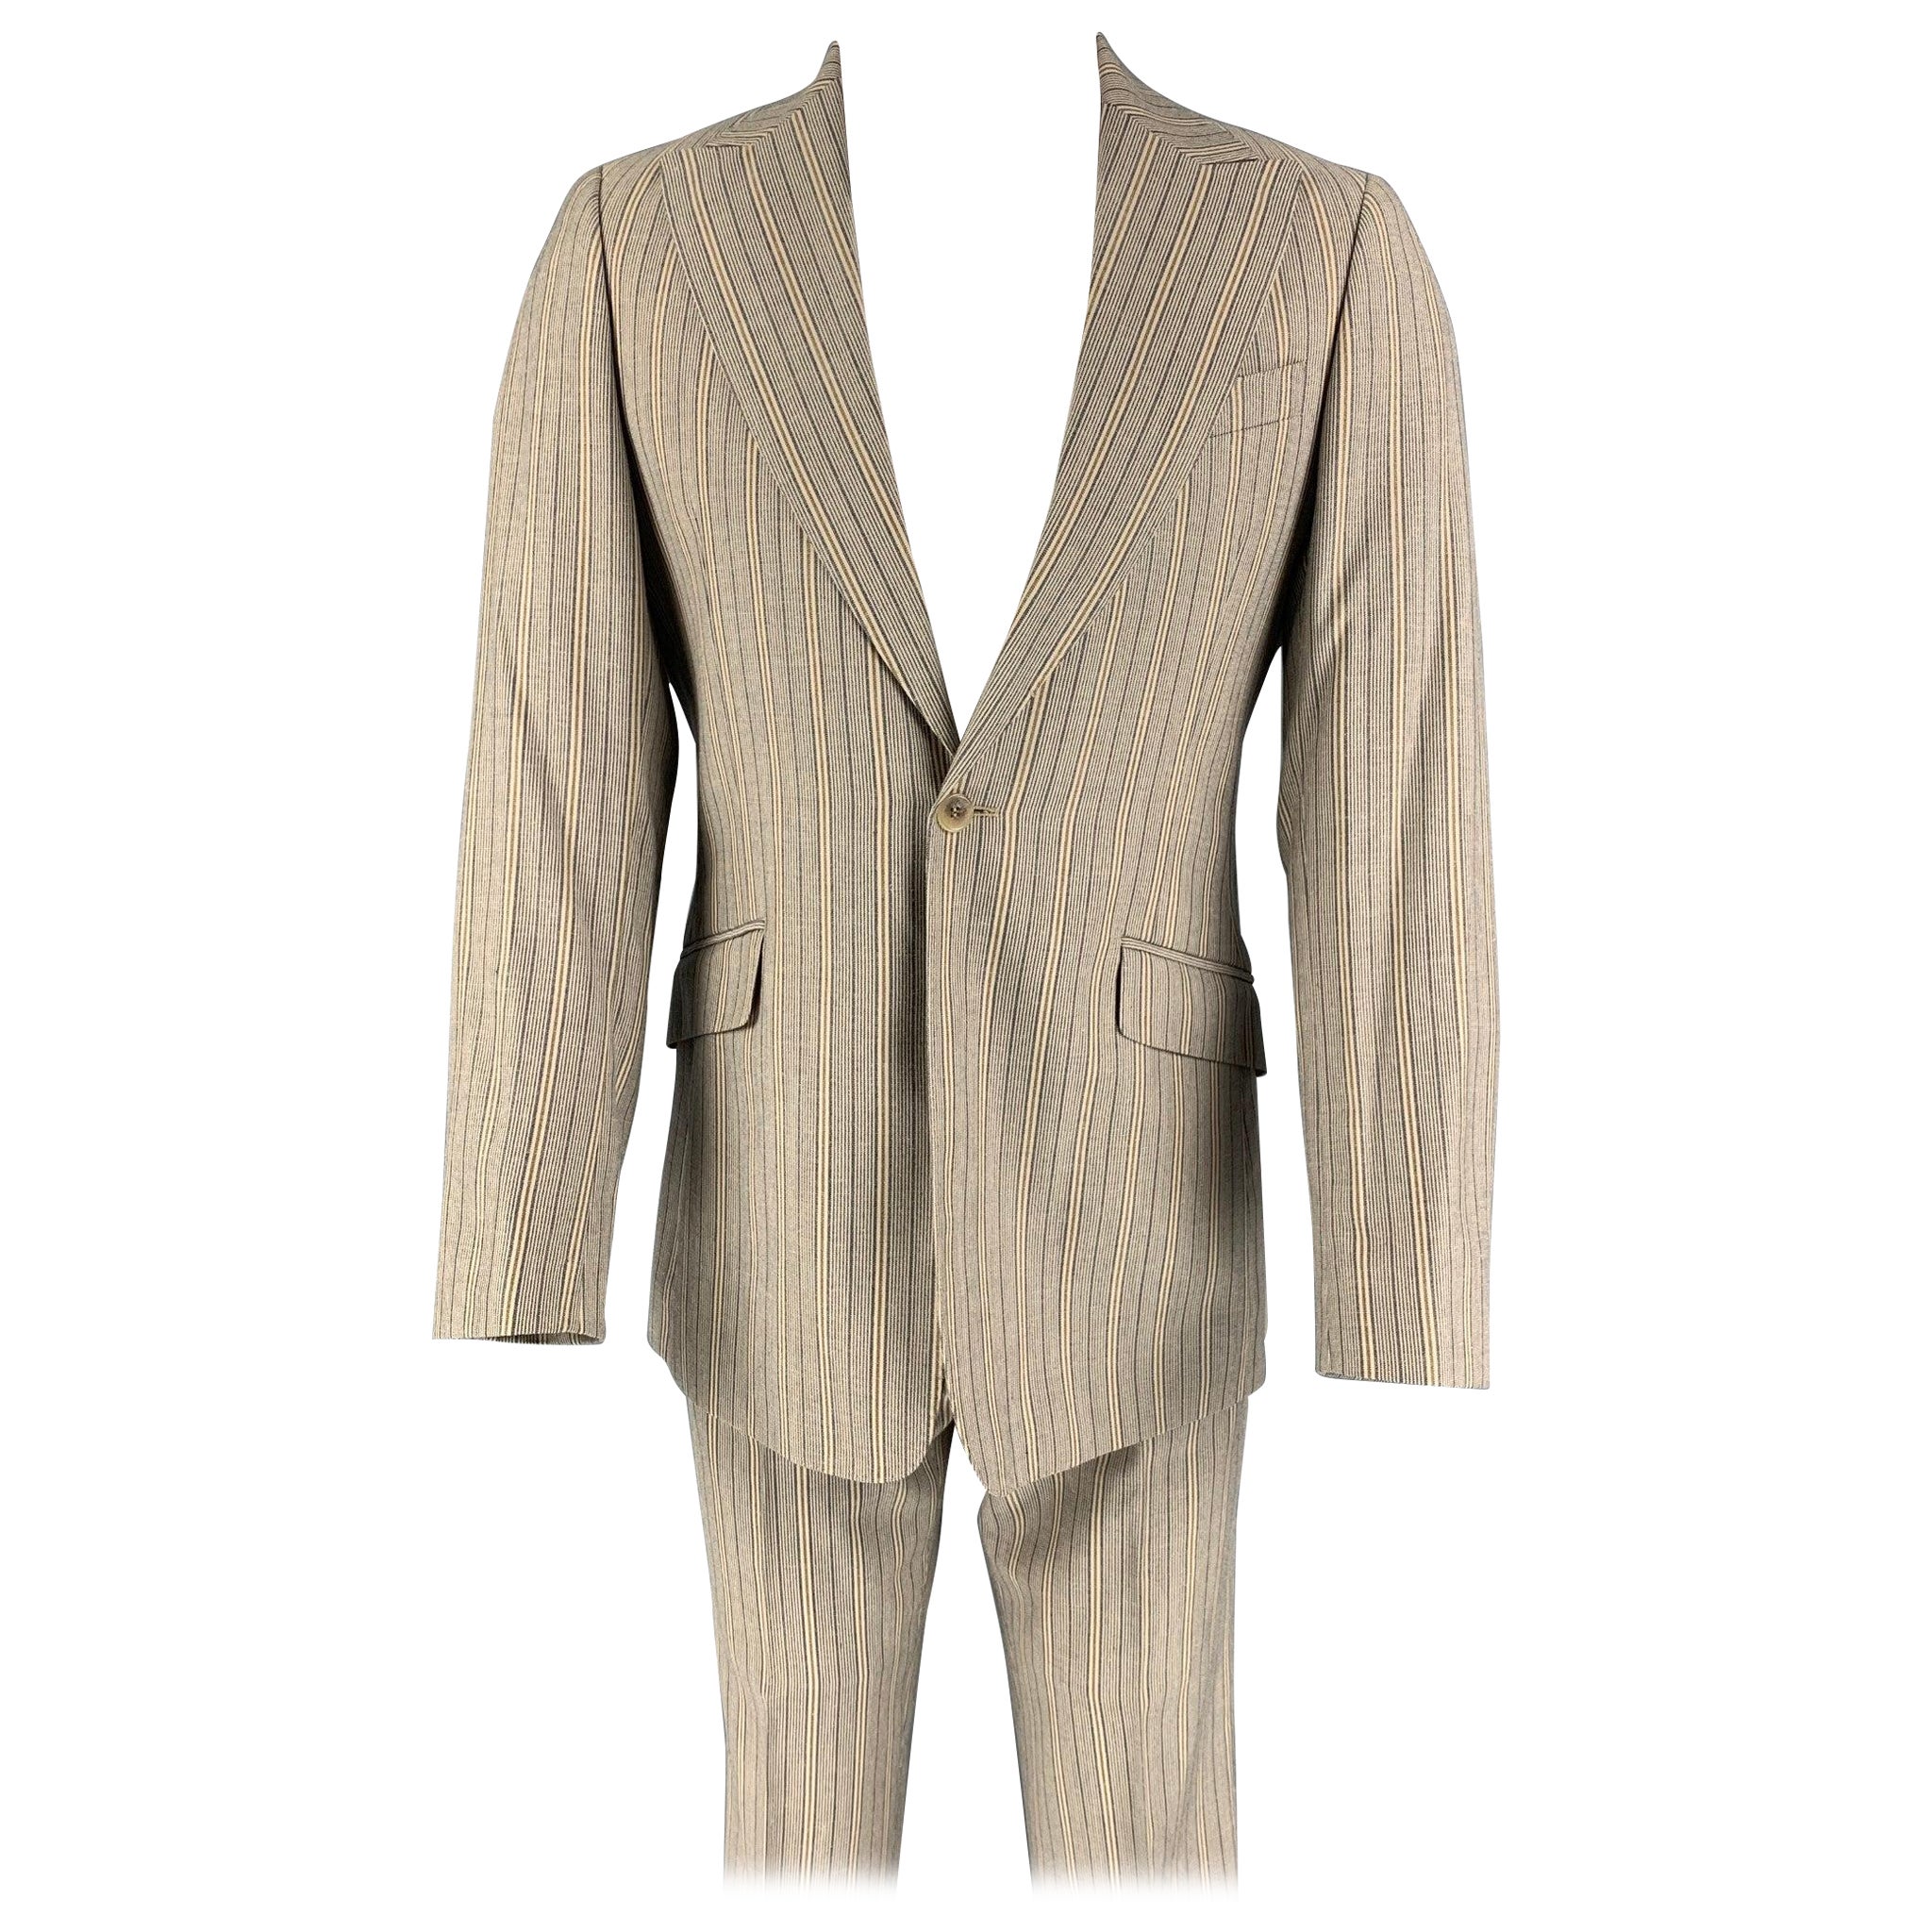 D&G by DOLCE & GABBANA Size 36 Khaki Navy Stripe Polyester Notch Lapel Suit For Sale